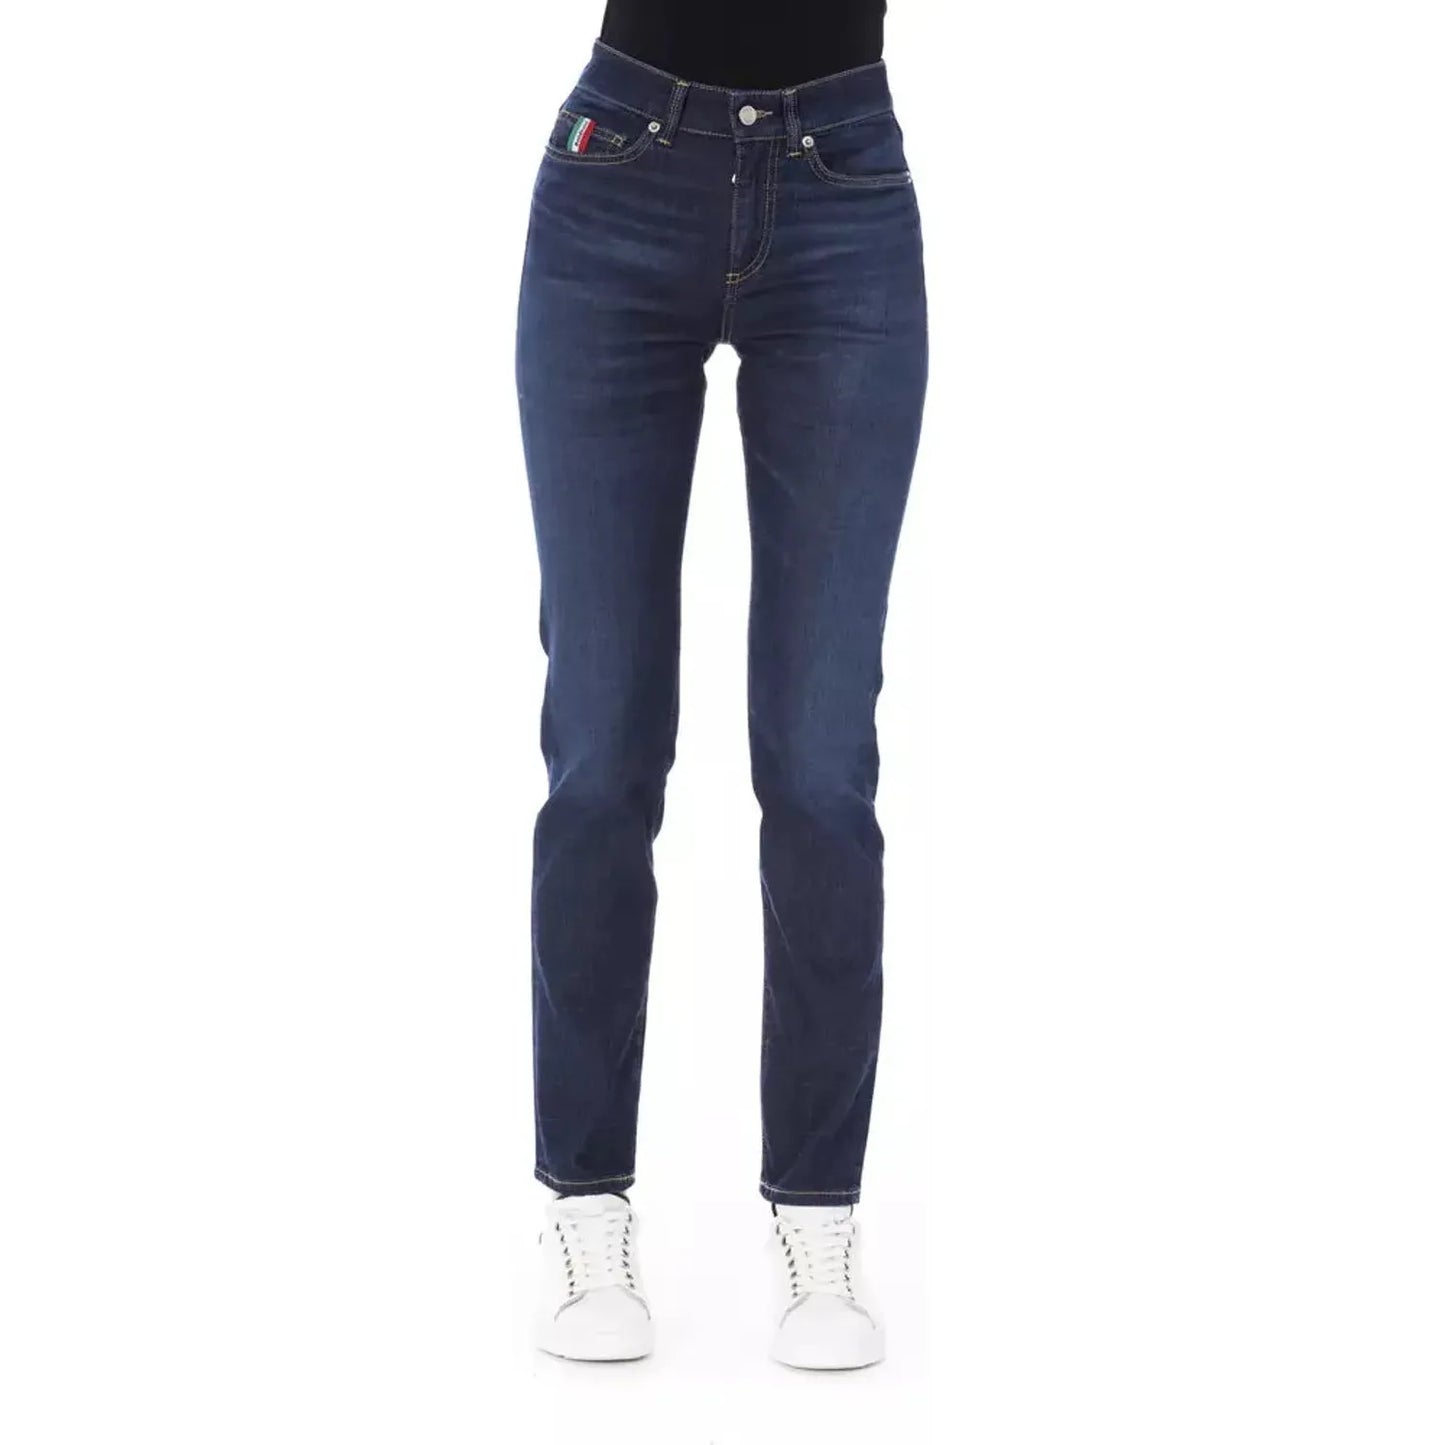 Baldinini Trend Chic Tricolor Detailed Designer Jeans blue-cotton-jeans-pant-209